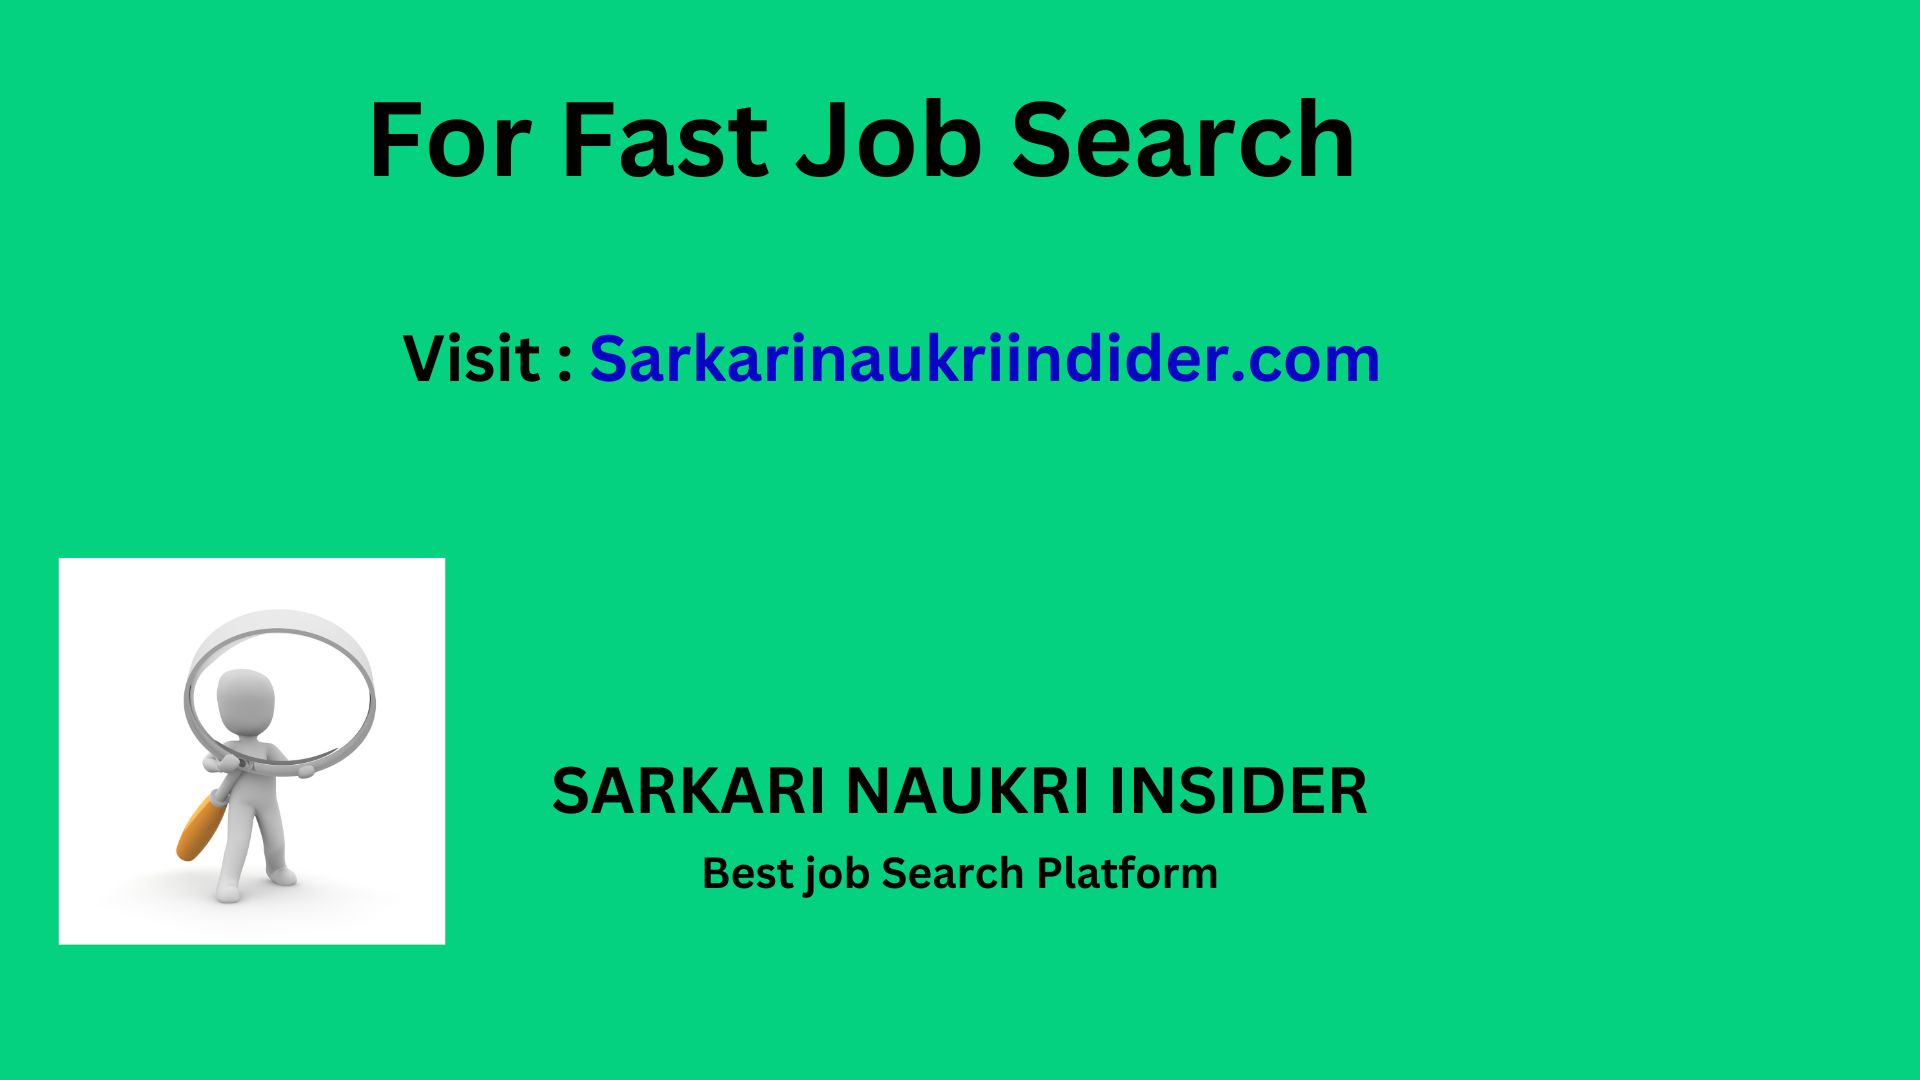 Fast Job Searchers